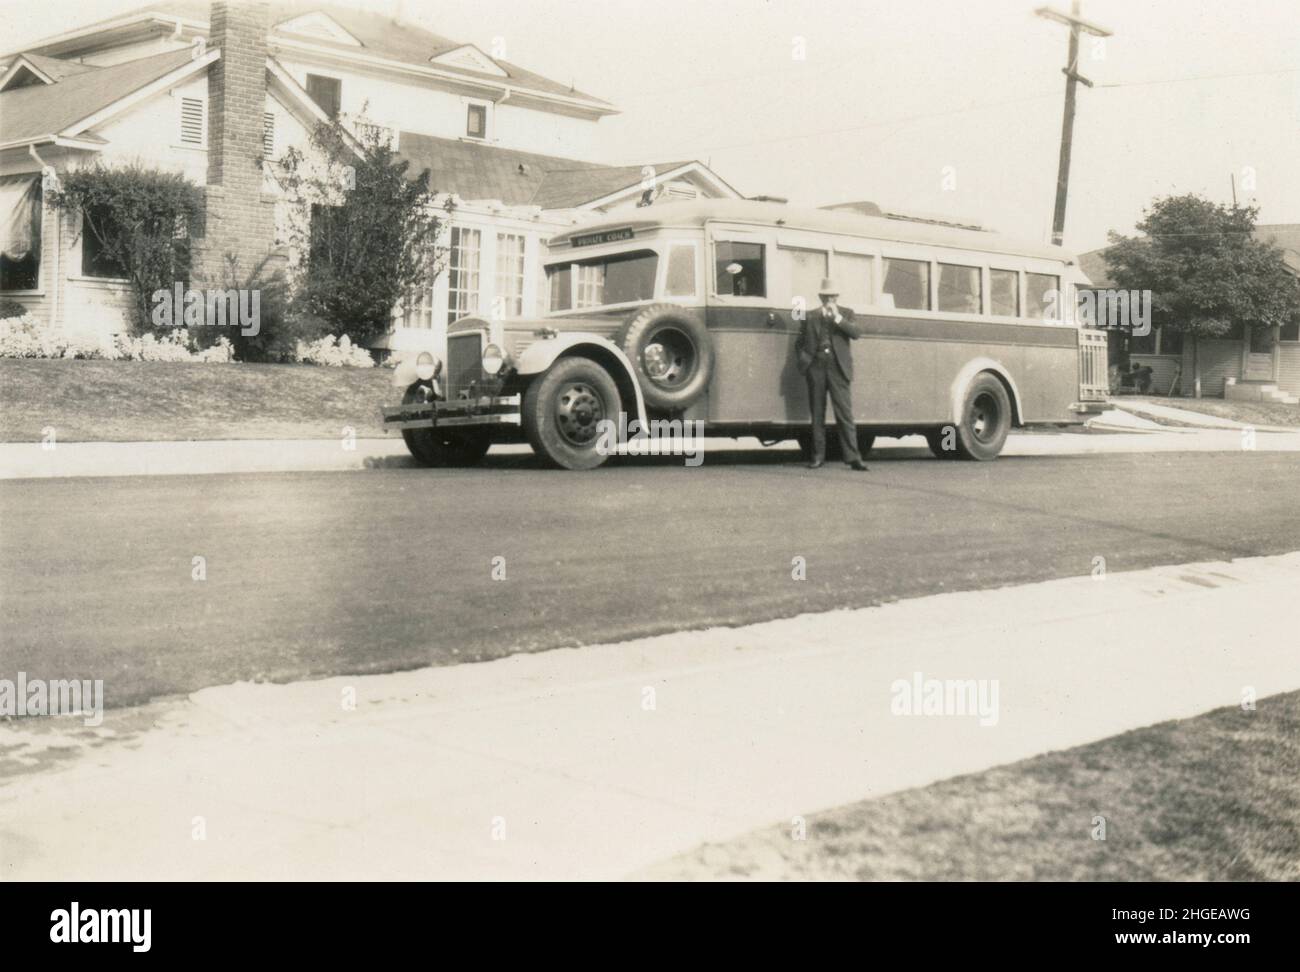 Foto antica del 1931, pullman privato a casa a Los Angeles, California, Stati Uniti. FONTE: FOTOGRAFIA ORIGINALE. Vedere Alamy 2HGEAW9 e 2HGEATK per ulteriori viste di questo autobus. Foto Stock